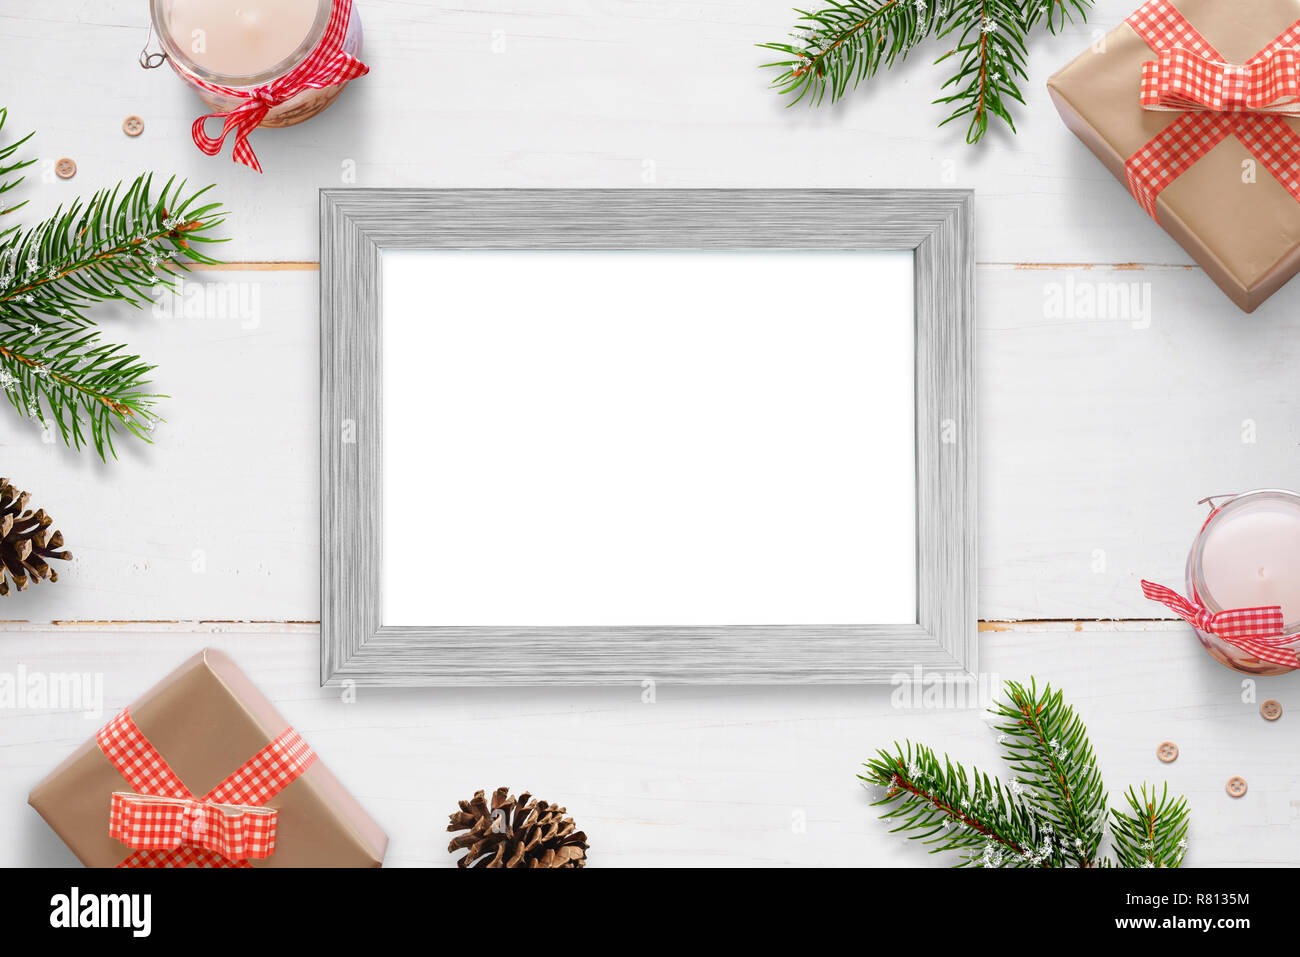 Cadre photo horizontal entouré avec de nouveaux cadeaux de Noël de l'année, les branches d'arbres et de décorations. Châssis isolés pour photo immersive. Banque D'Images